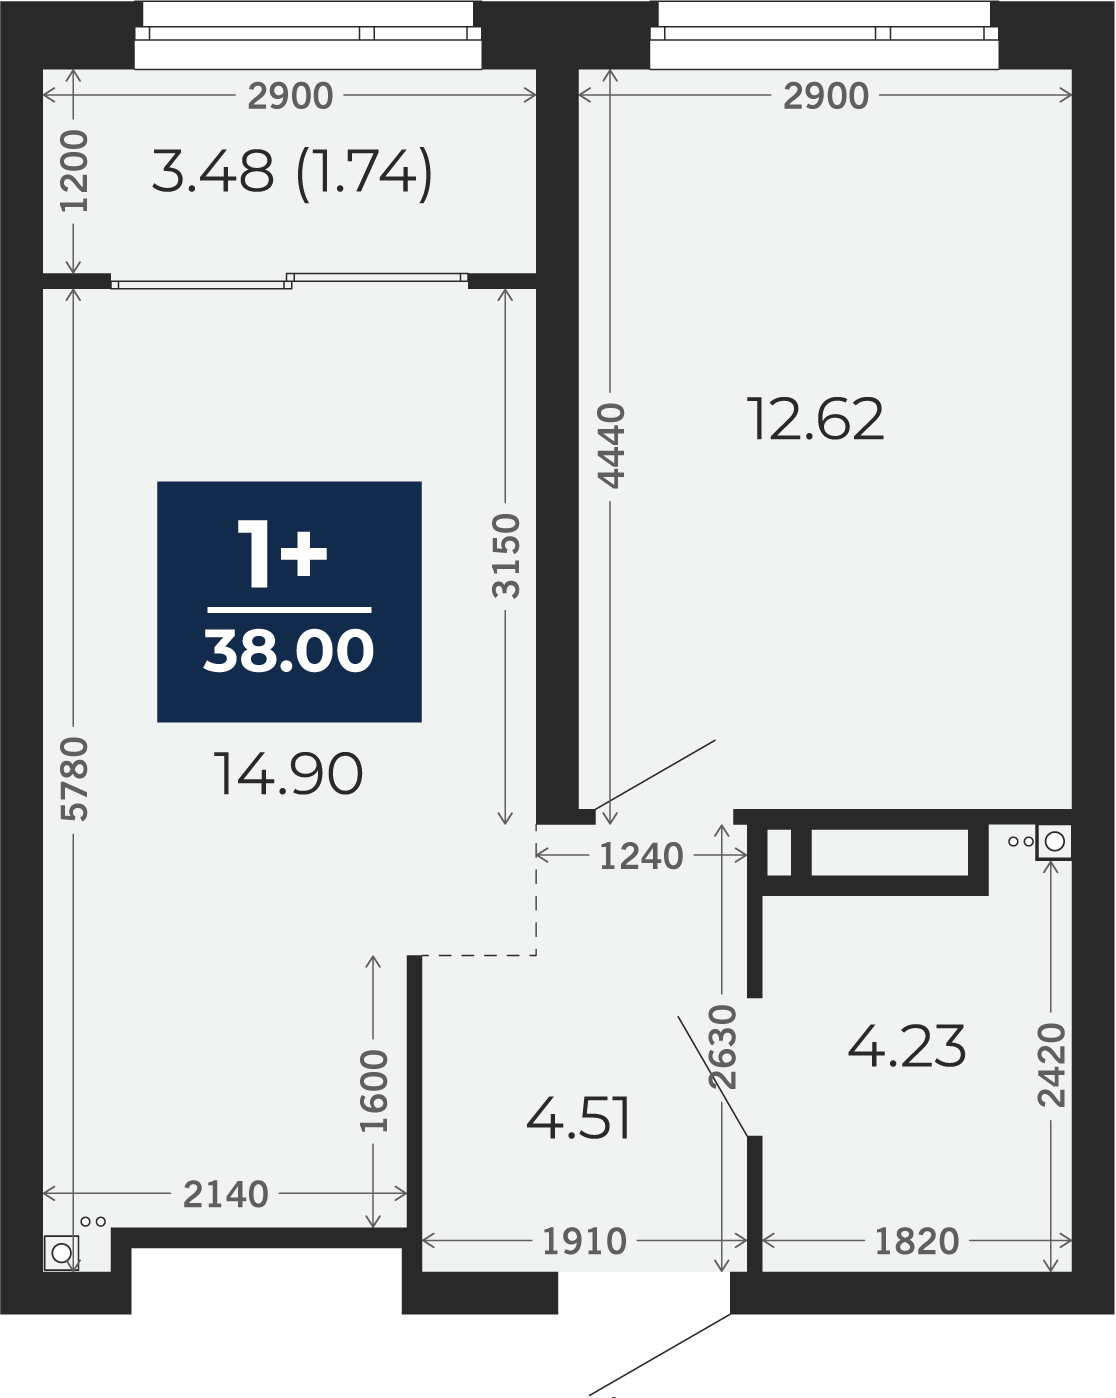 Квартира № 291, 1-комнатная, 38 кв. м, 19 этаж